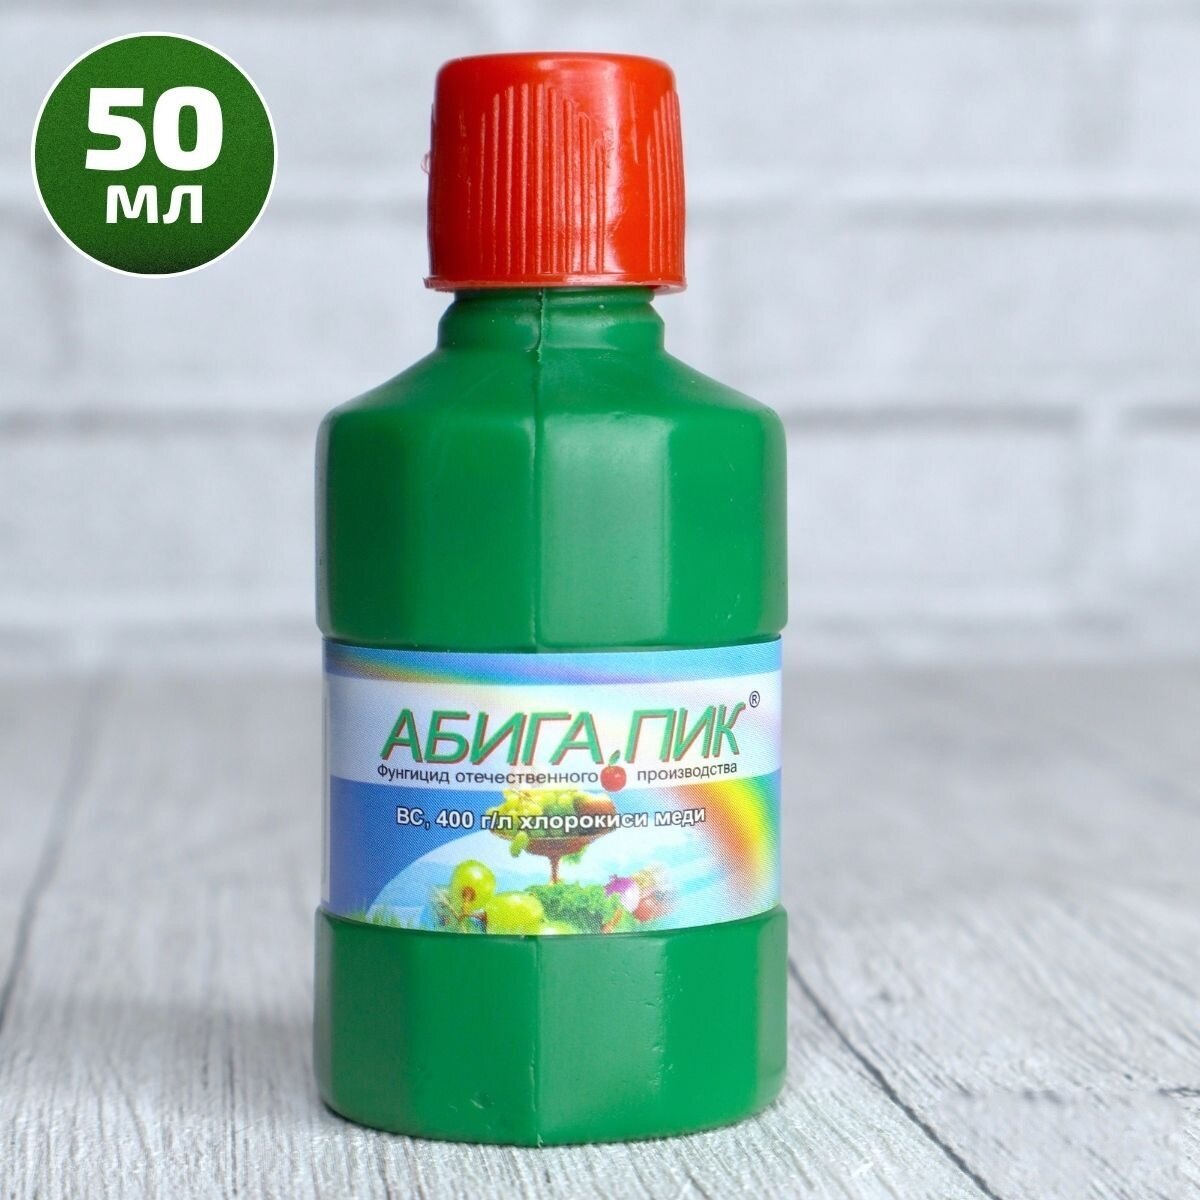 Абига Пик 50 грамм от болезней растений, набор 2шт